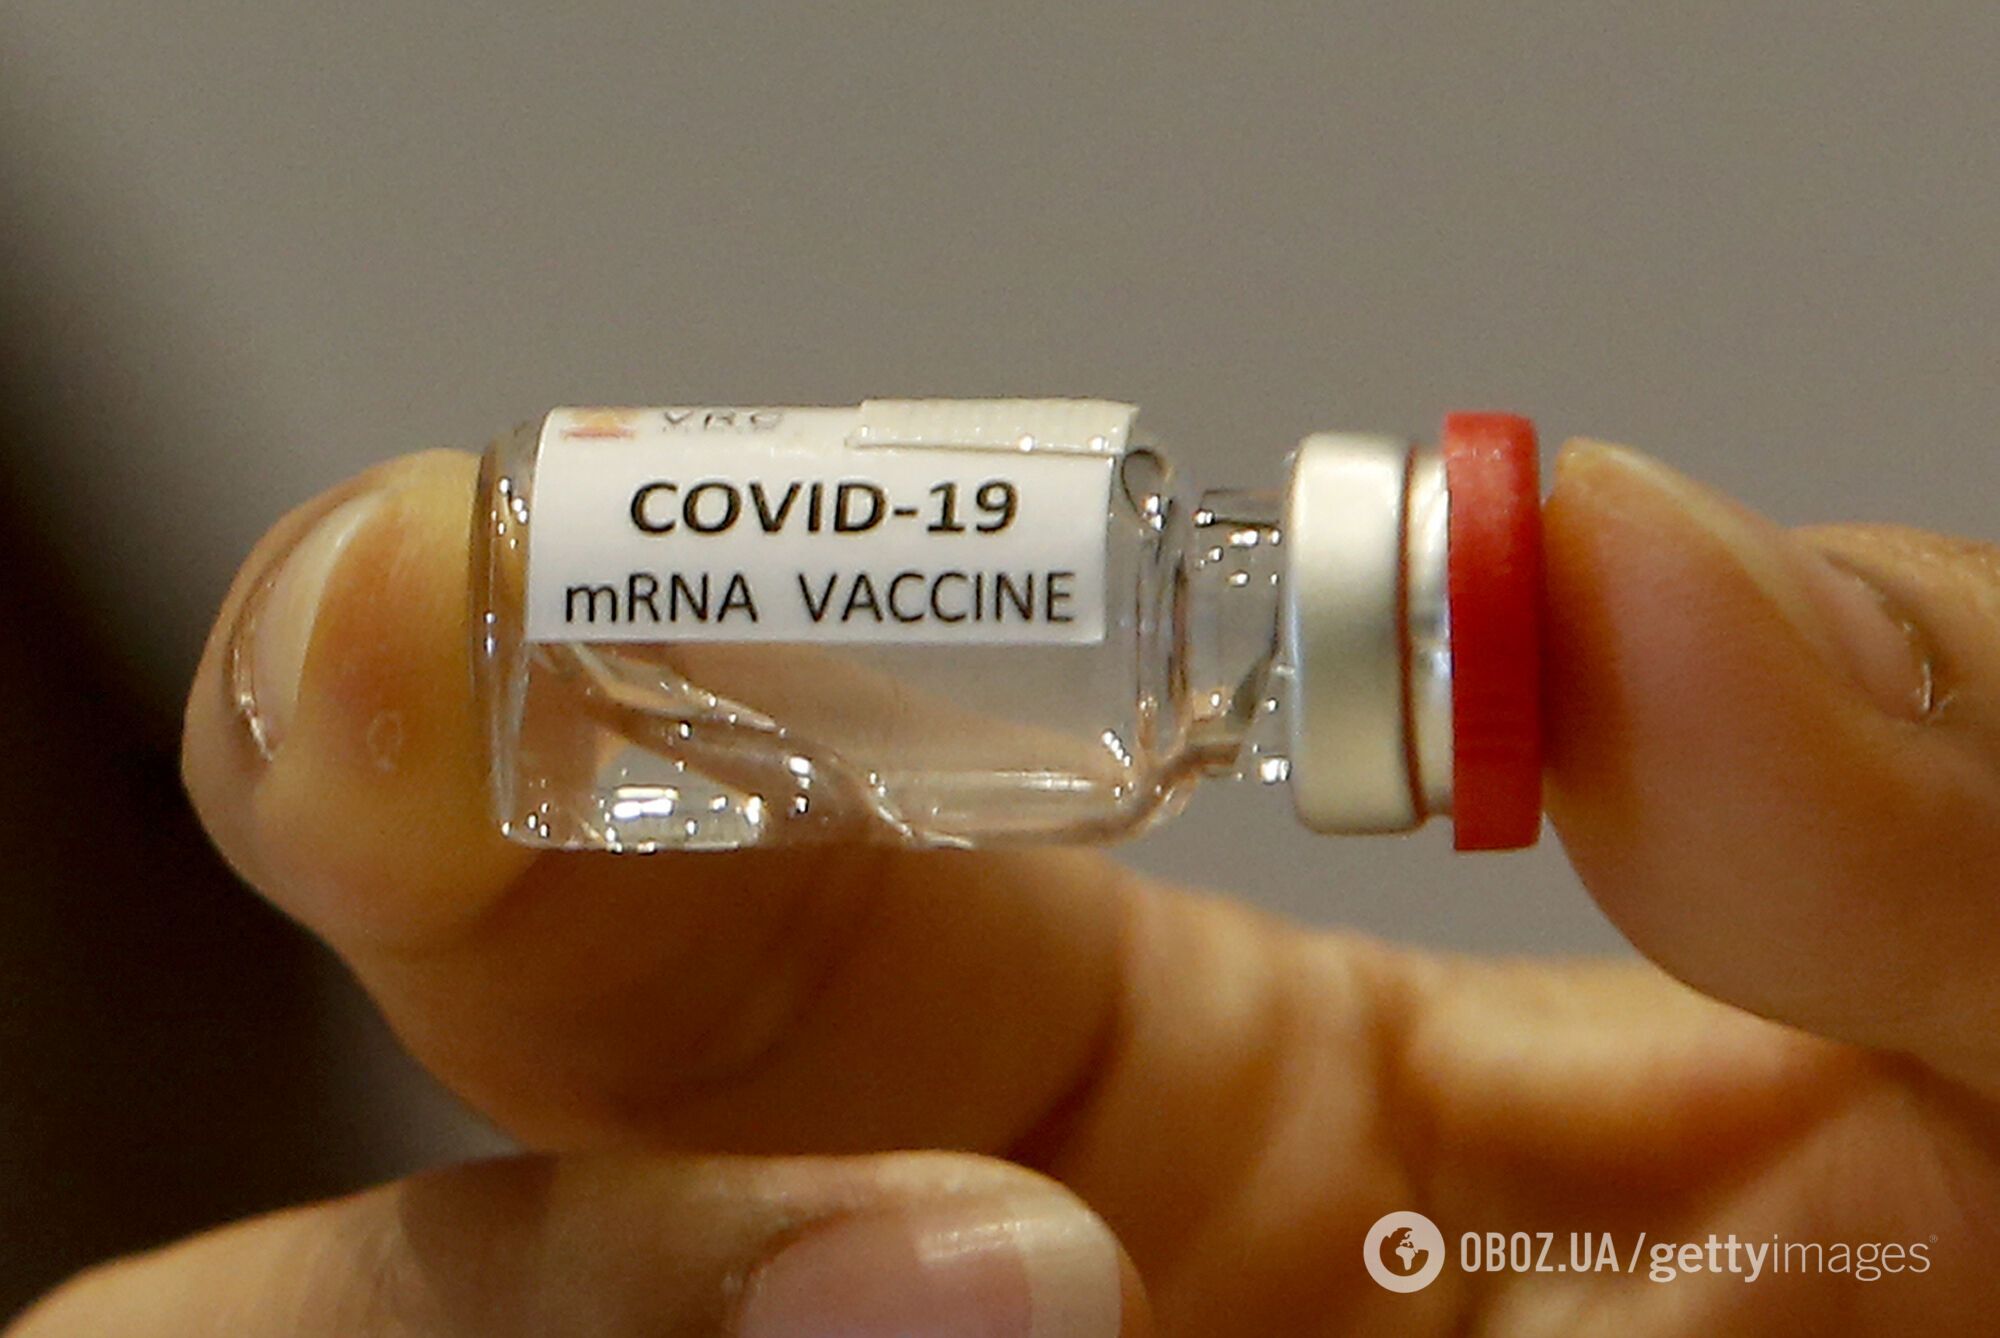 "Ми не будемо останні в черзі на вакцину від коронавірусу"